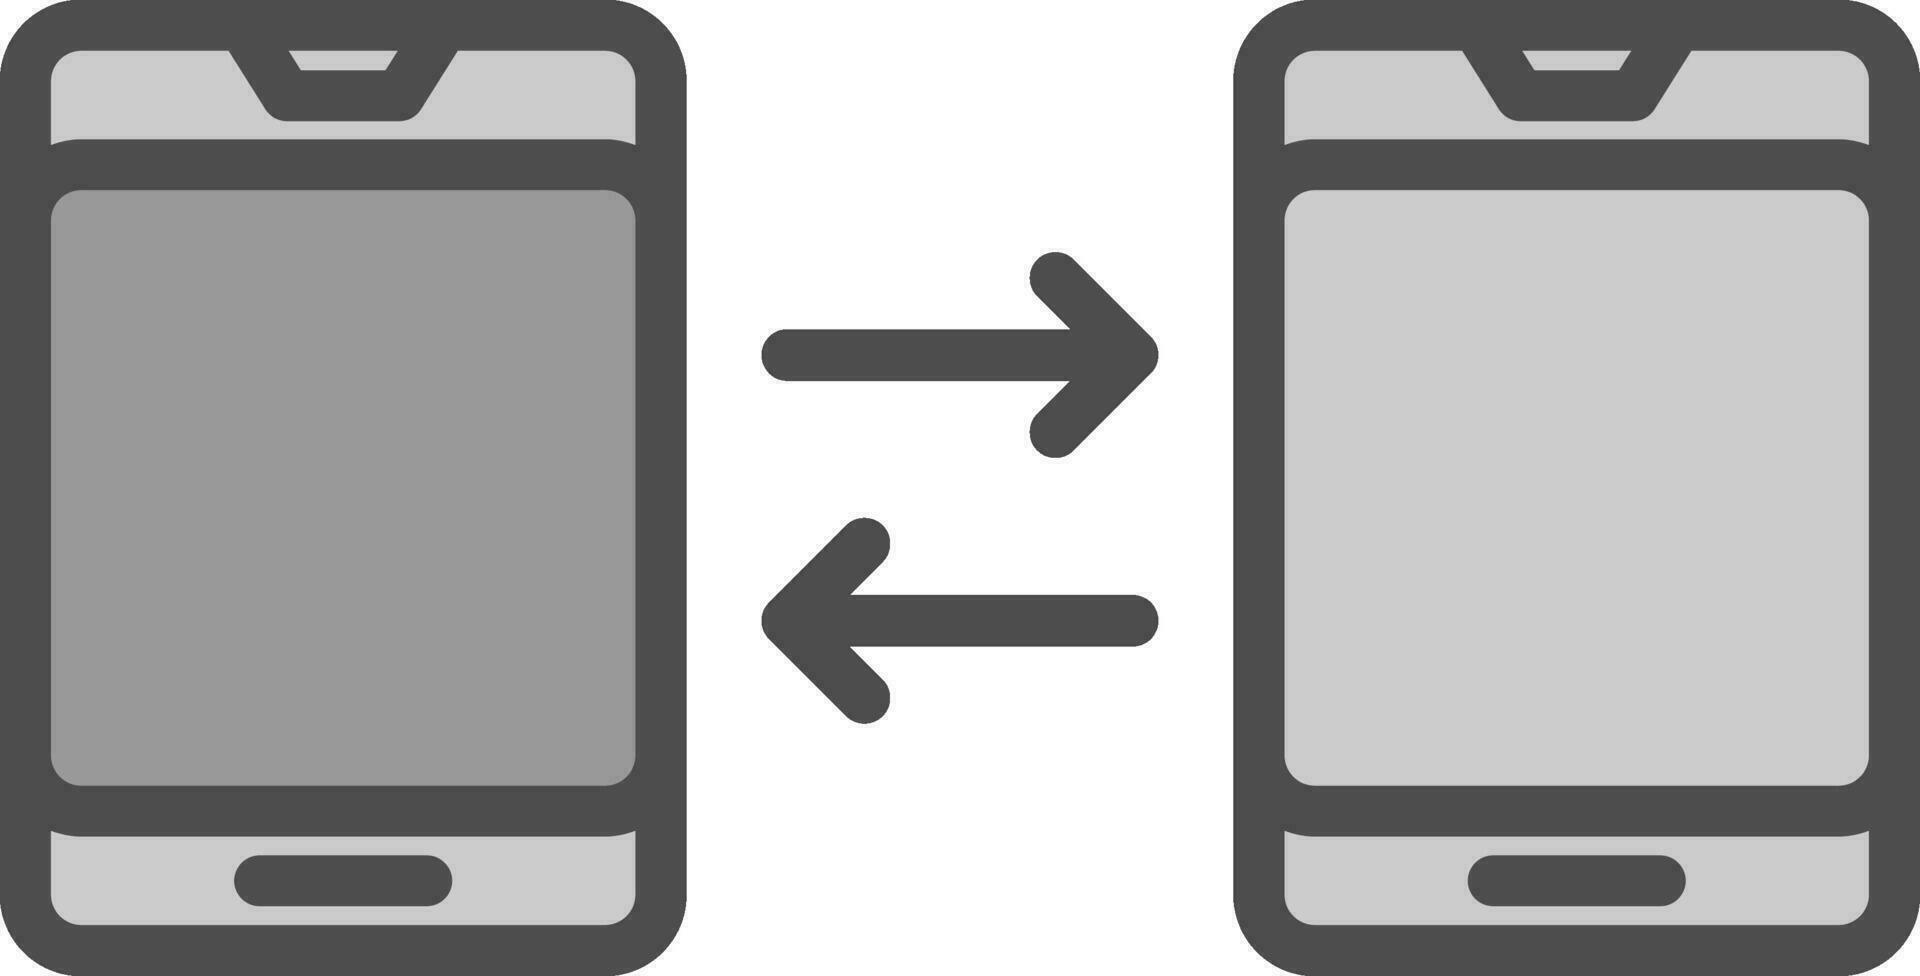 design de ícone de vetor de smartphone